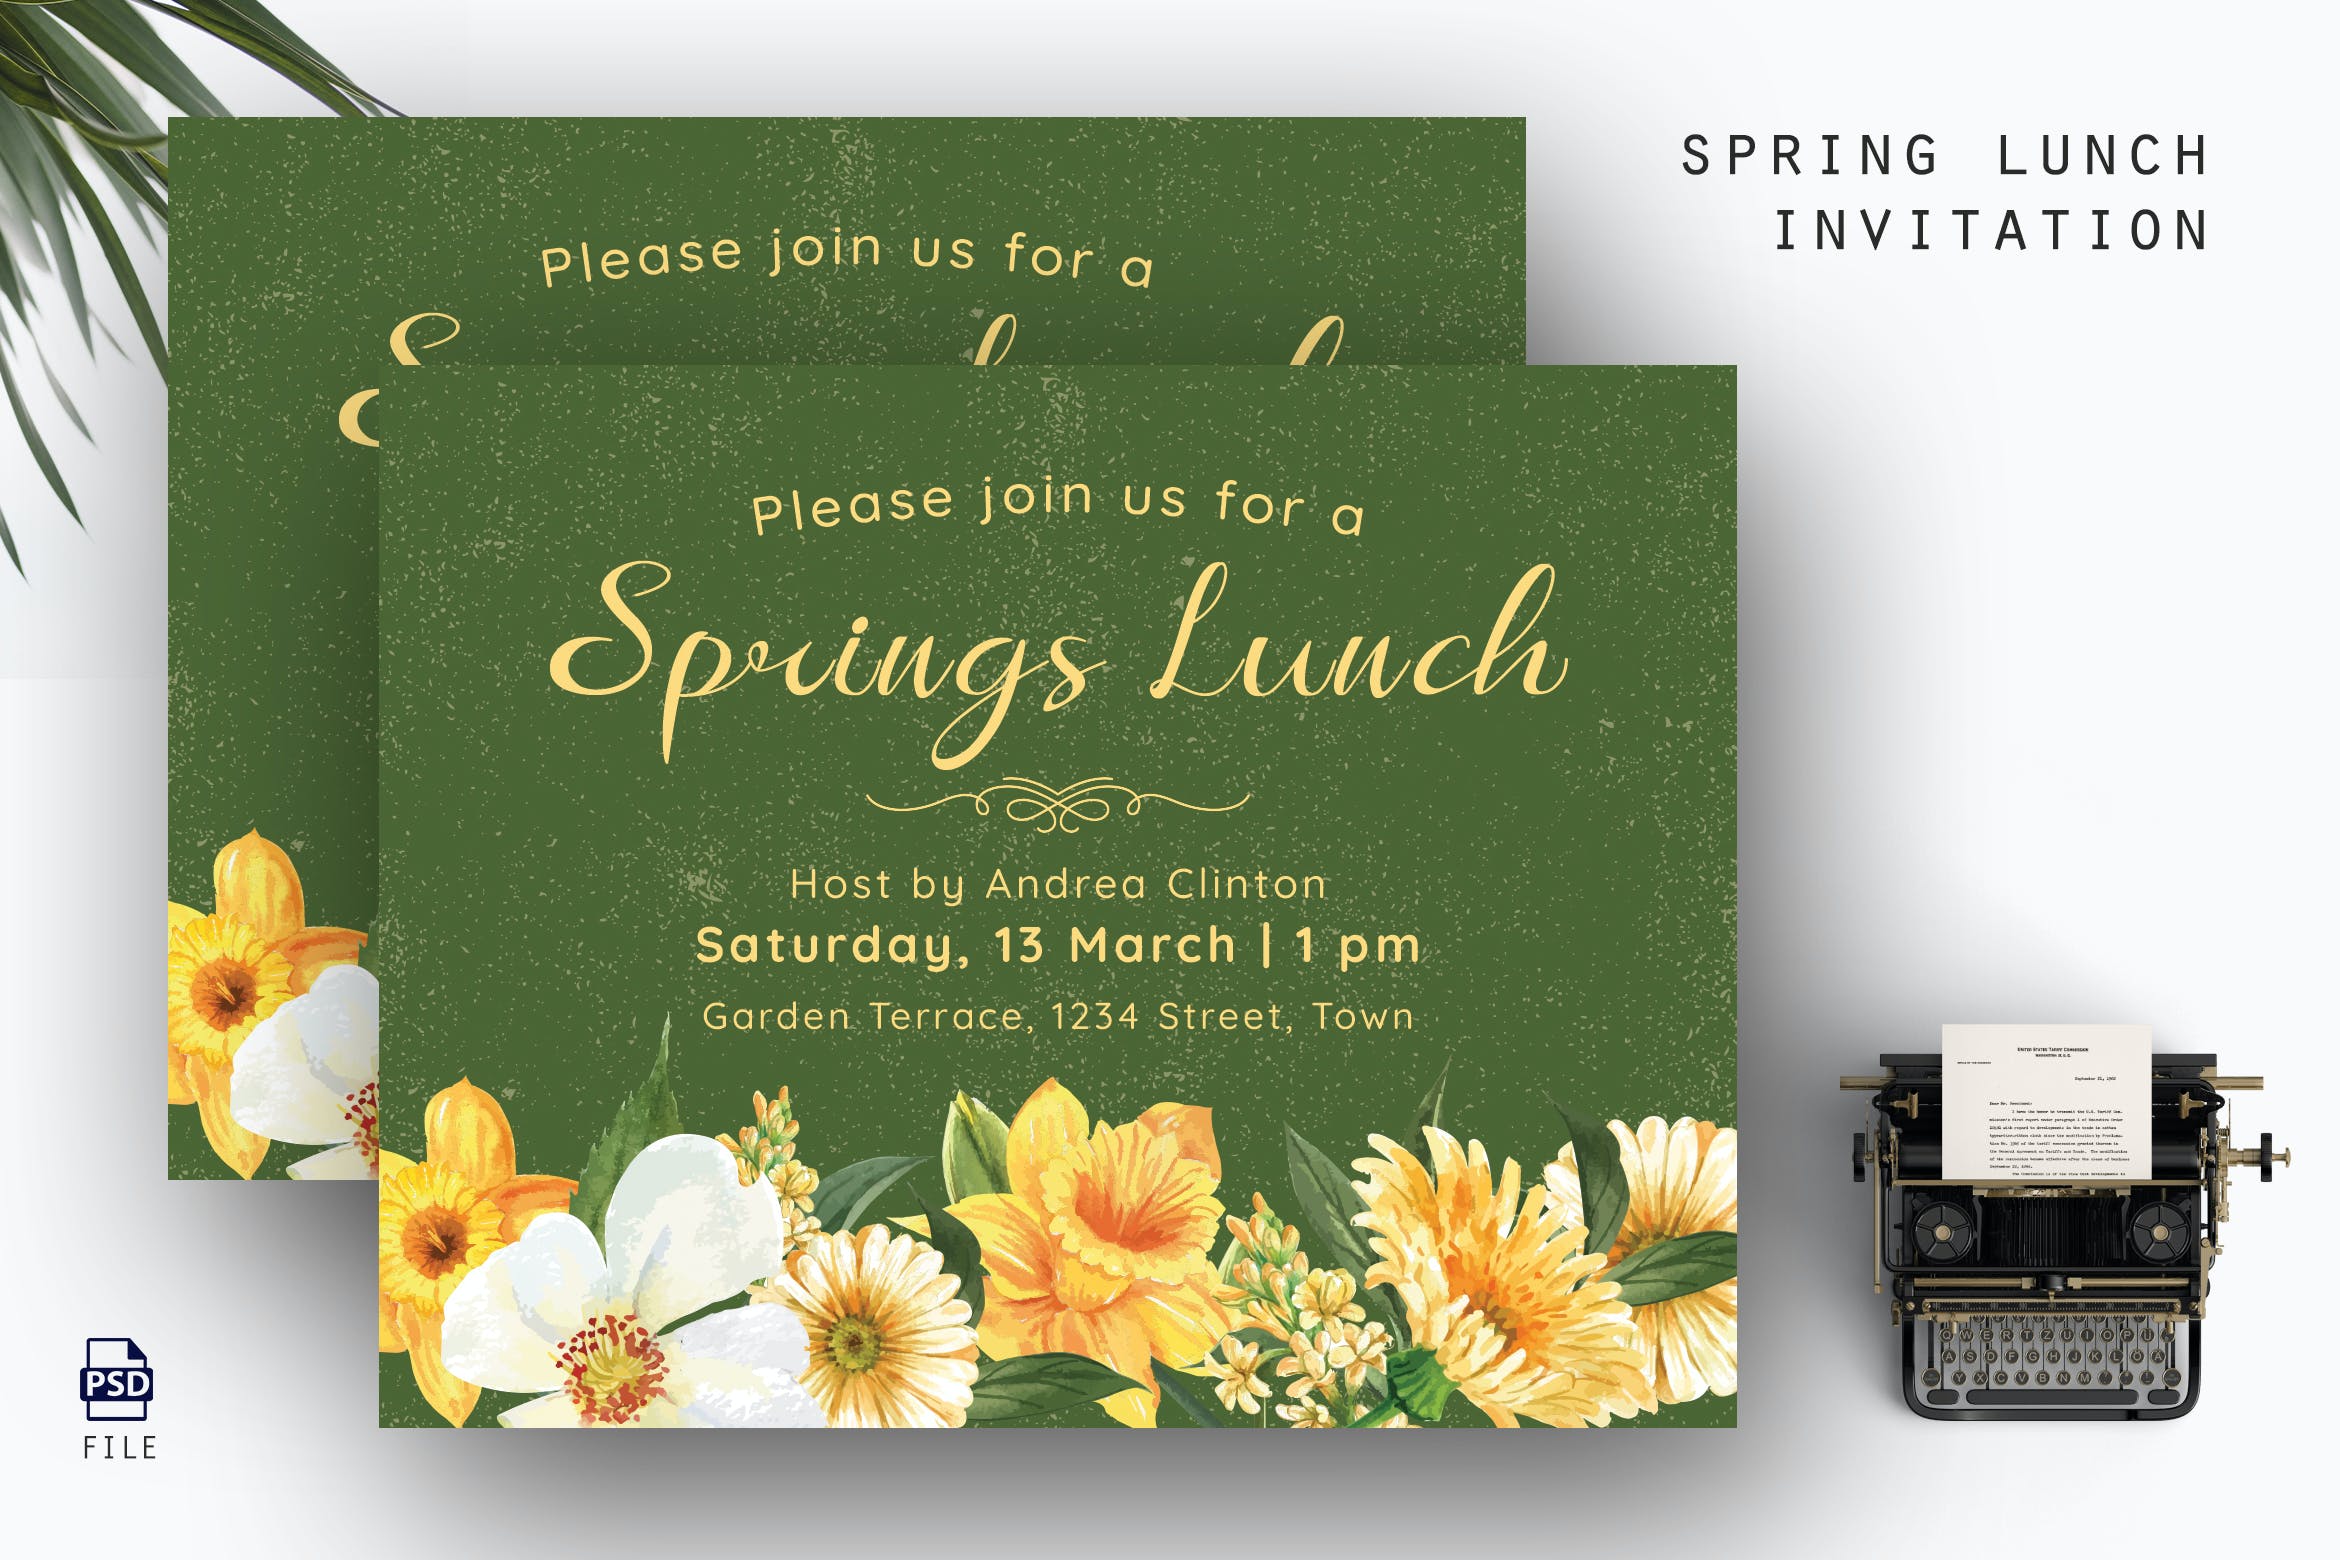 春季午餐邀请函设计模板 Spring Lunch Invitation 设计素材 第1张